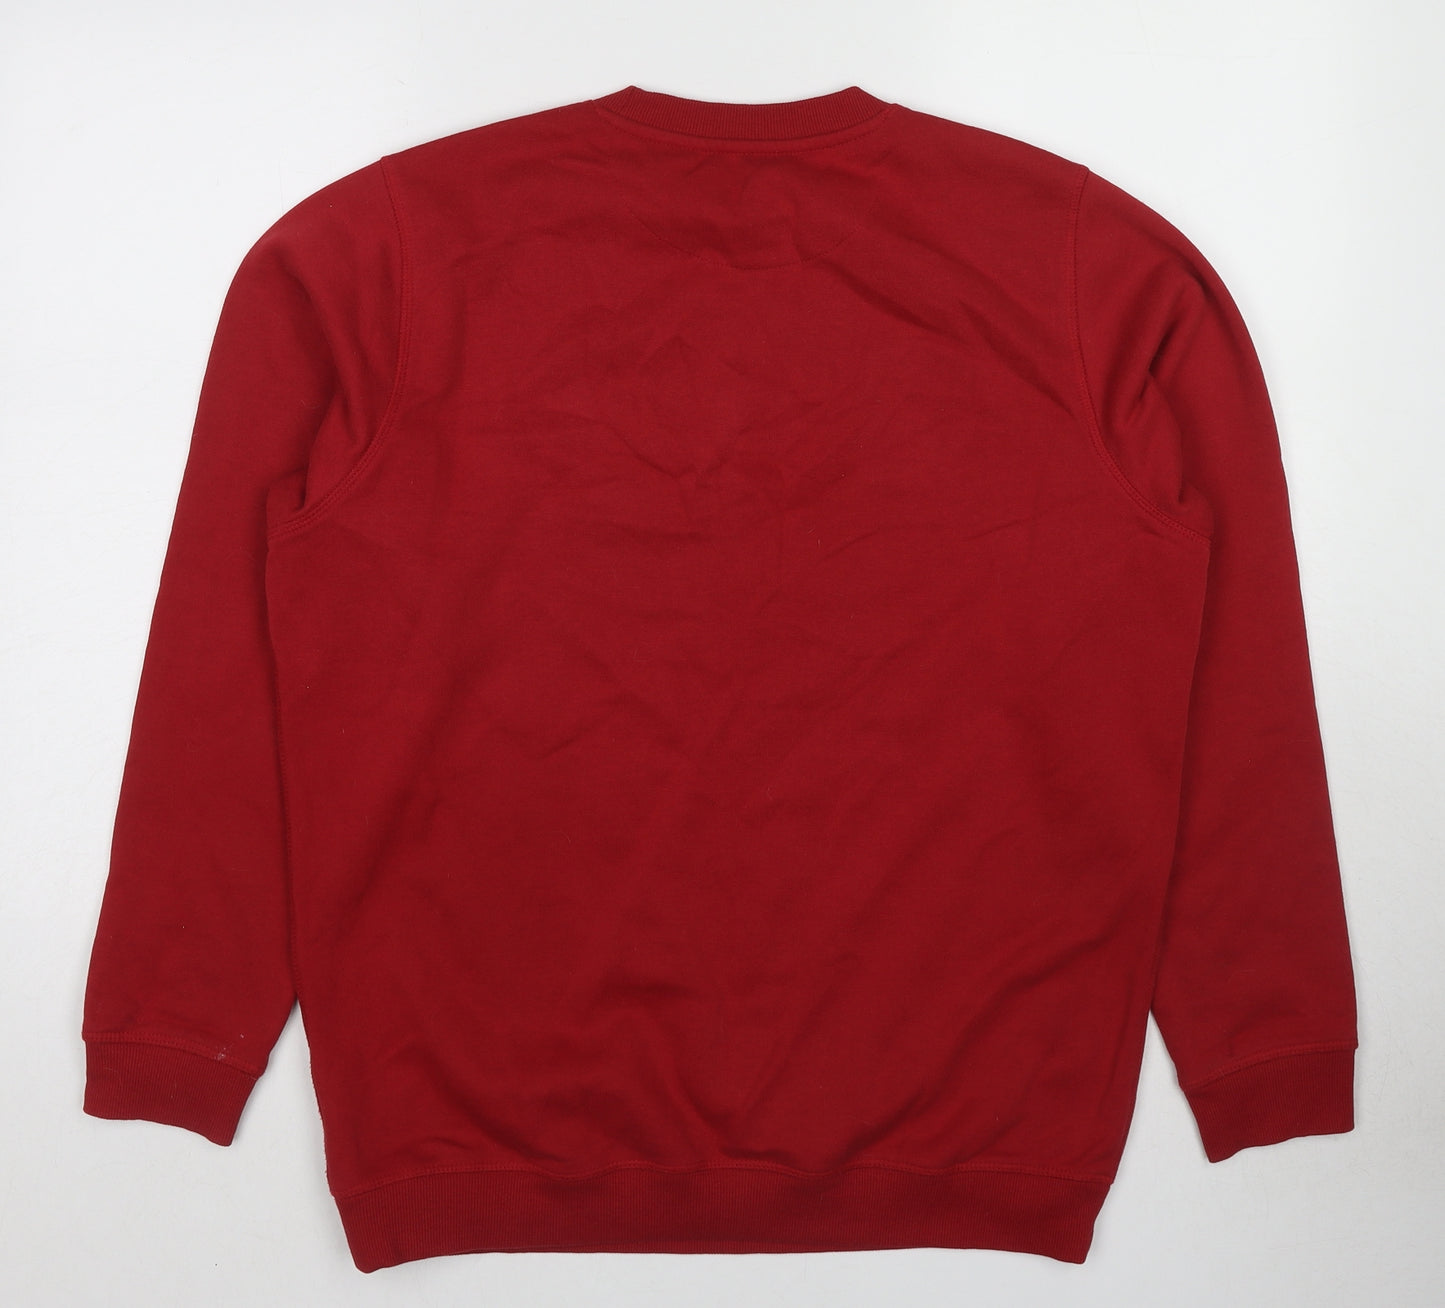 EWM Mens Red Cotton Pullover Sweatshirt Size M